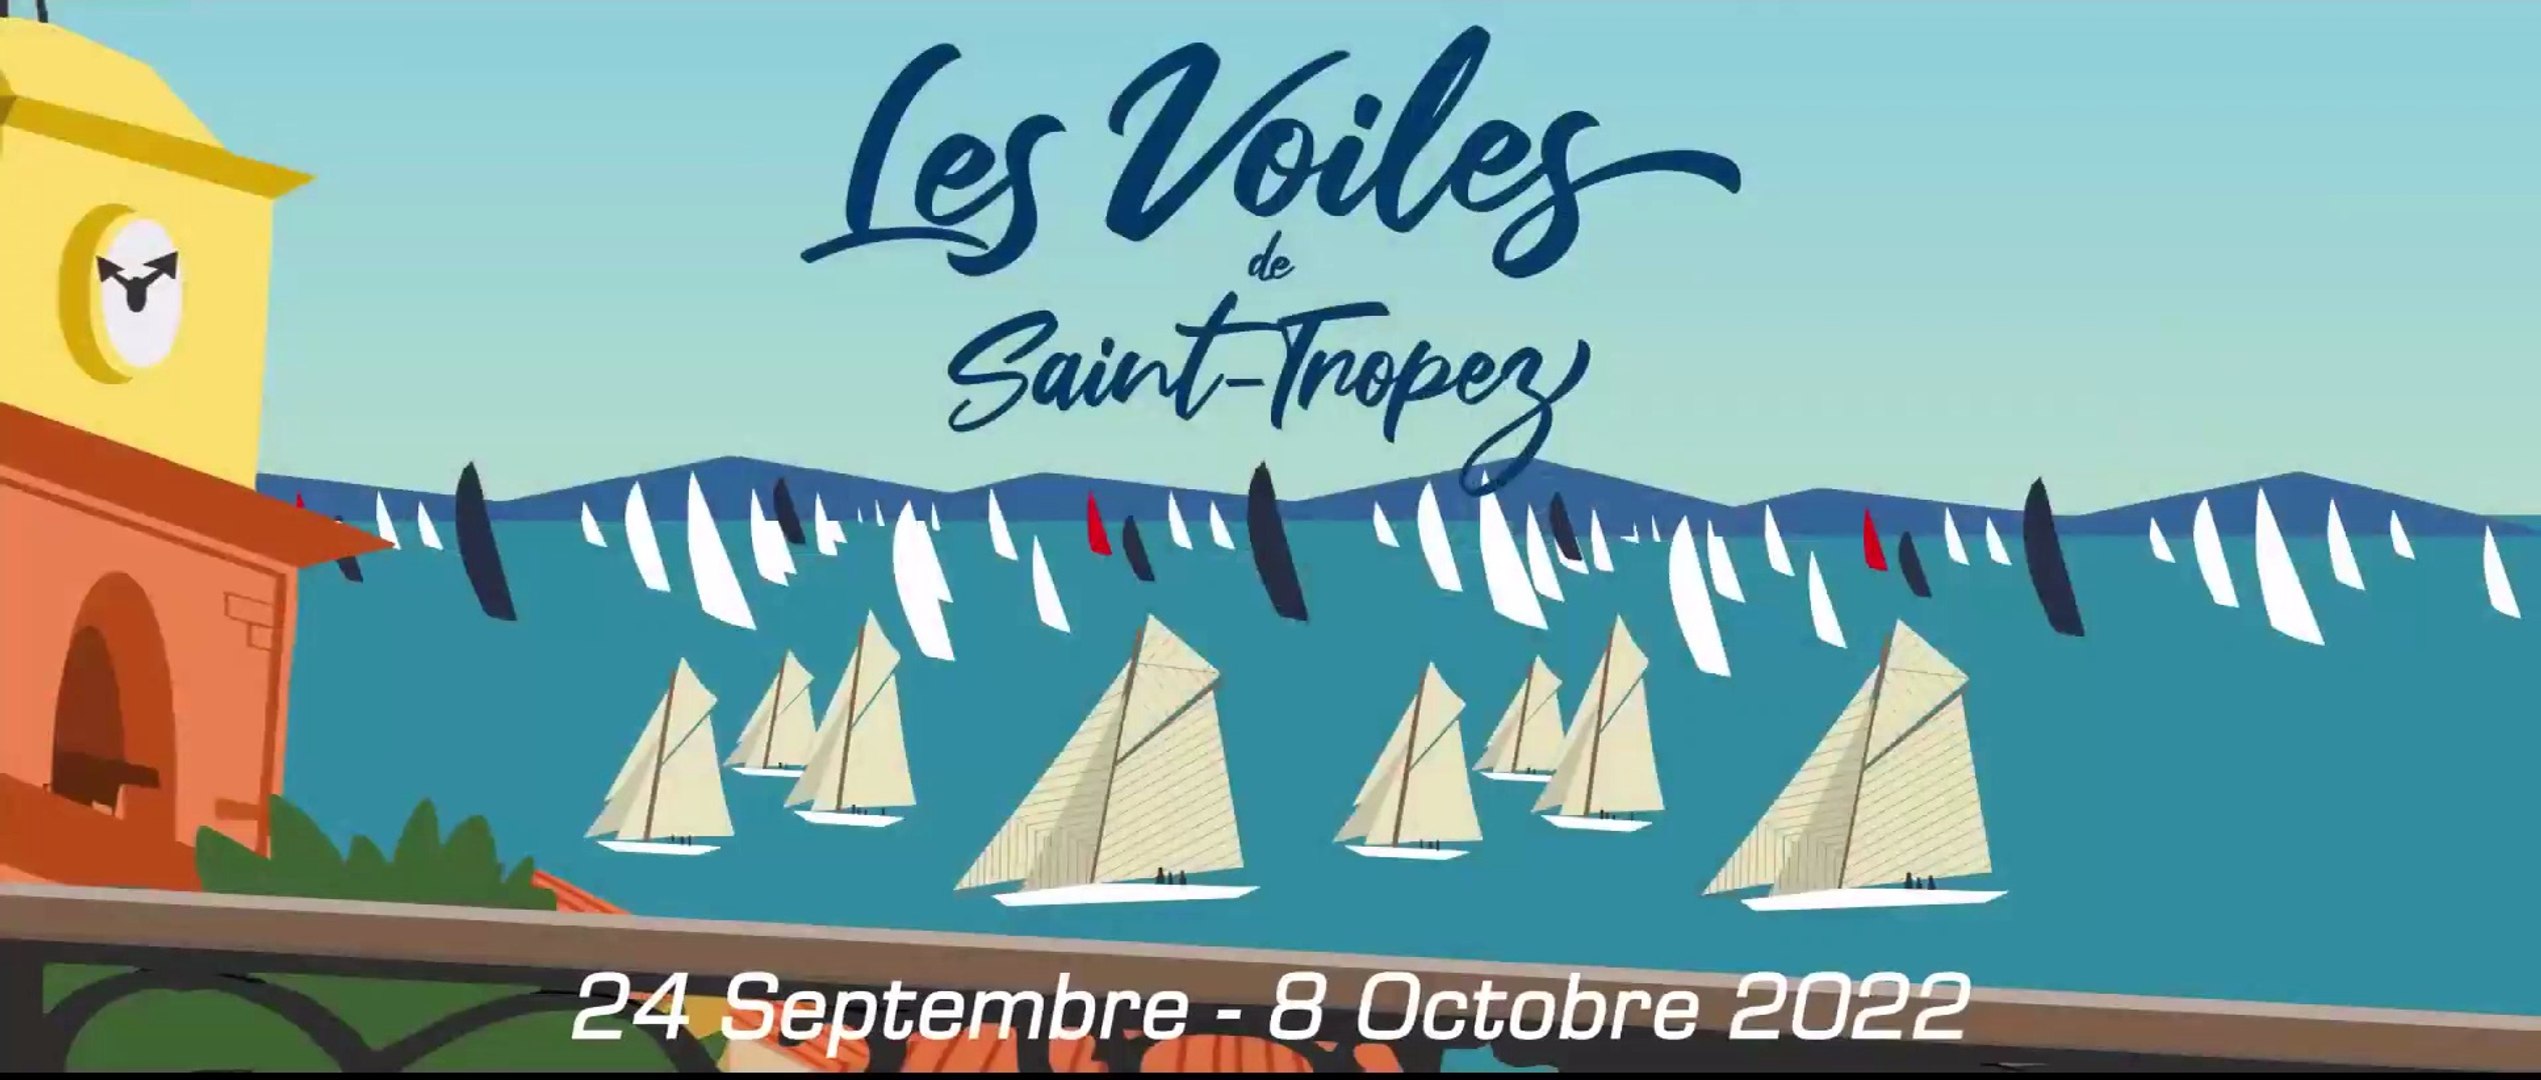 Voiles de Saint-Tropez 2022 - Vidéo Dailymotion